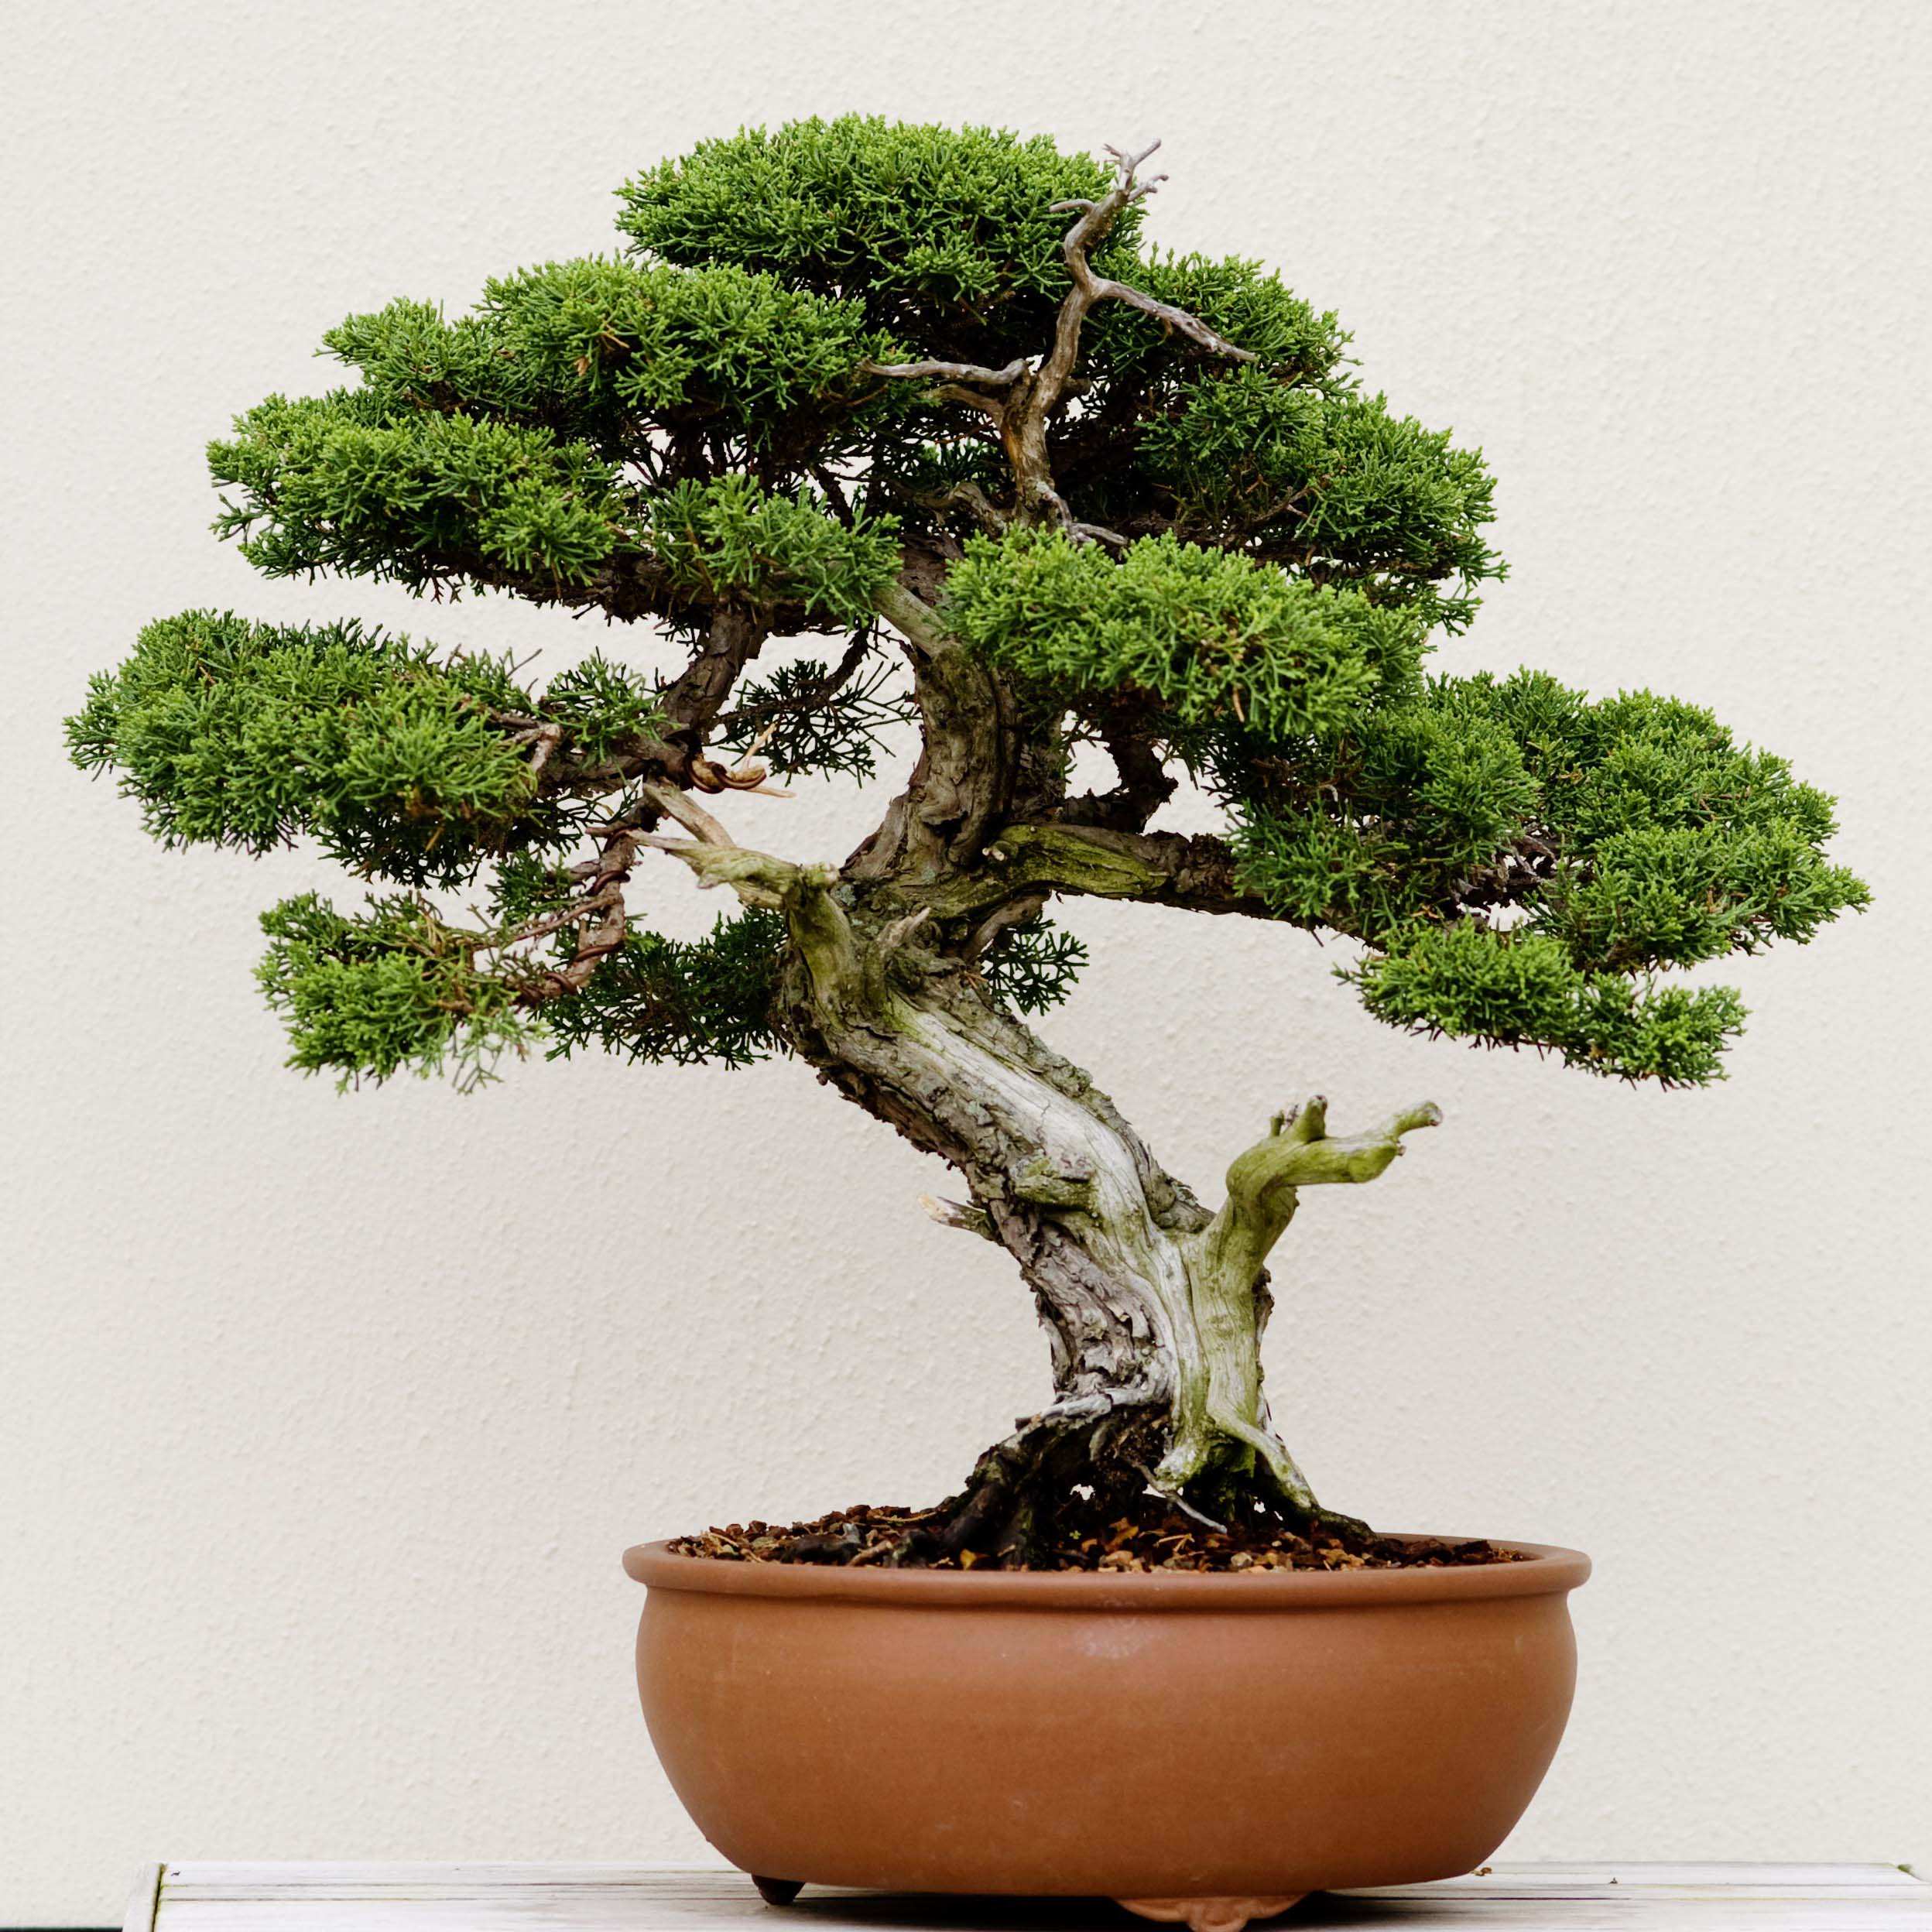 Phương pháp chuyển bồn cây cảnh bonsai - Trần Hợp